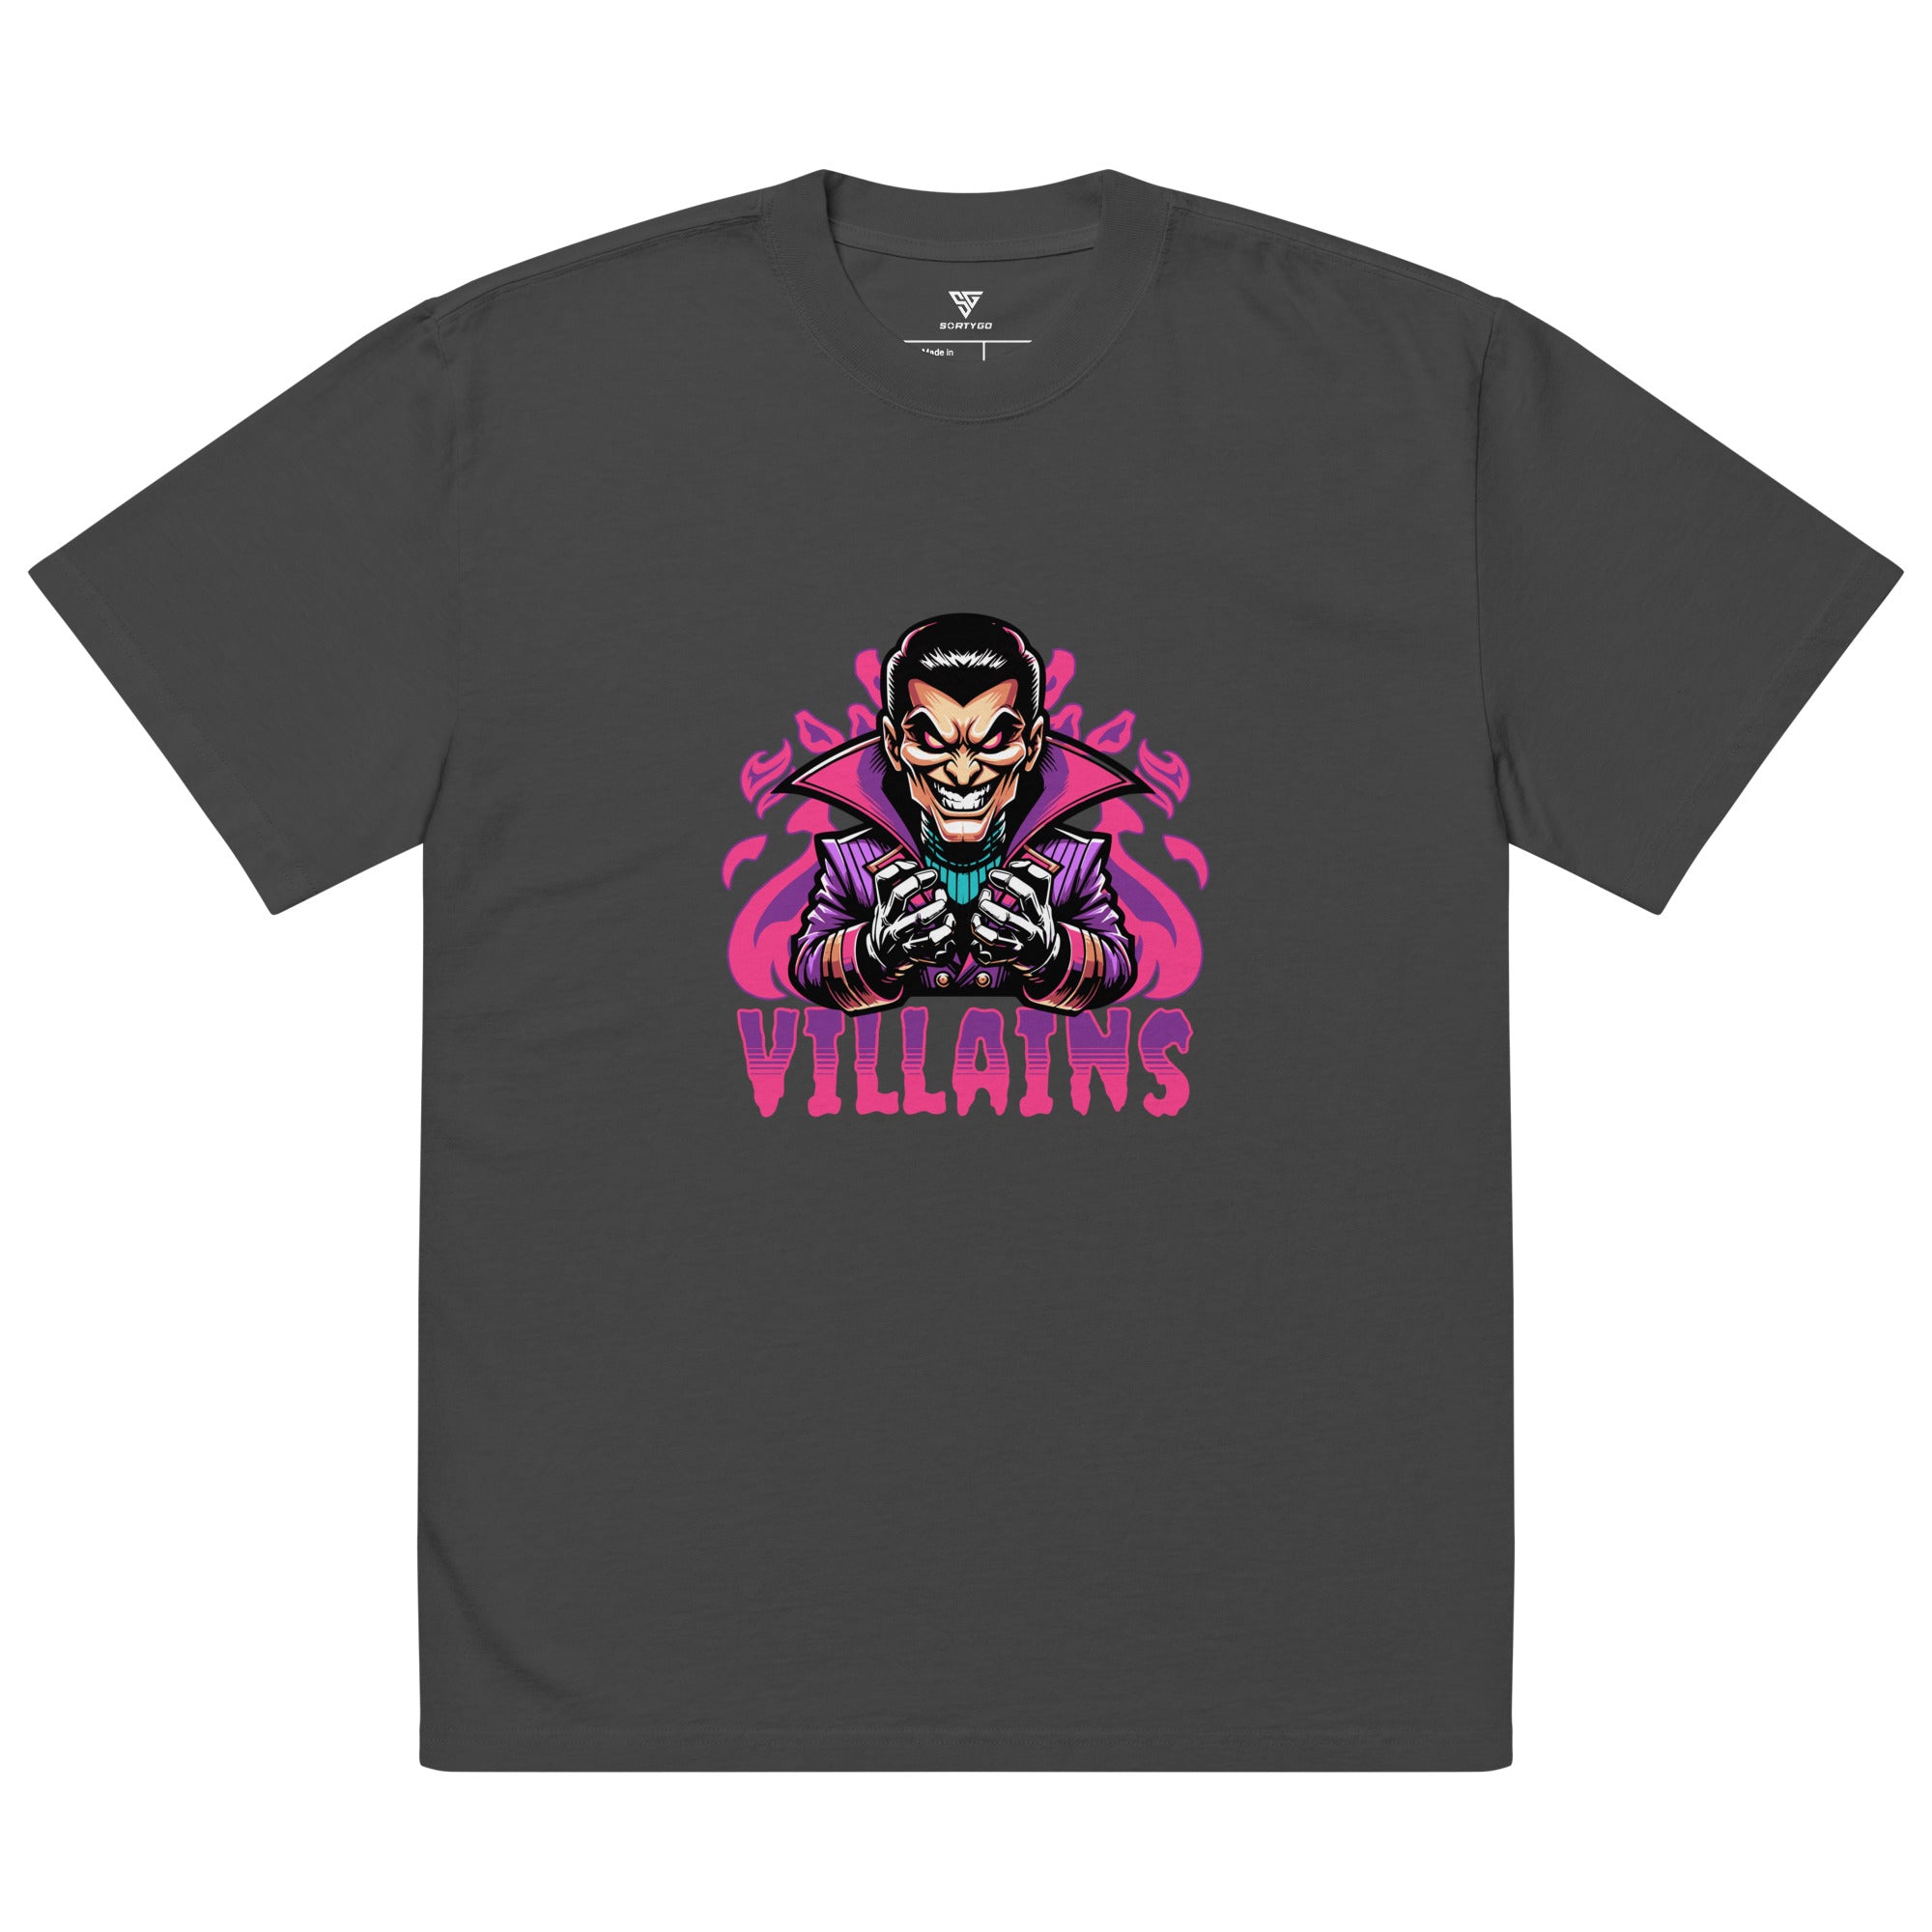 SORTYGO - Villains Men Oversized T-Shirt in Faded Black